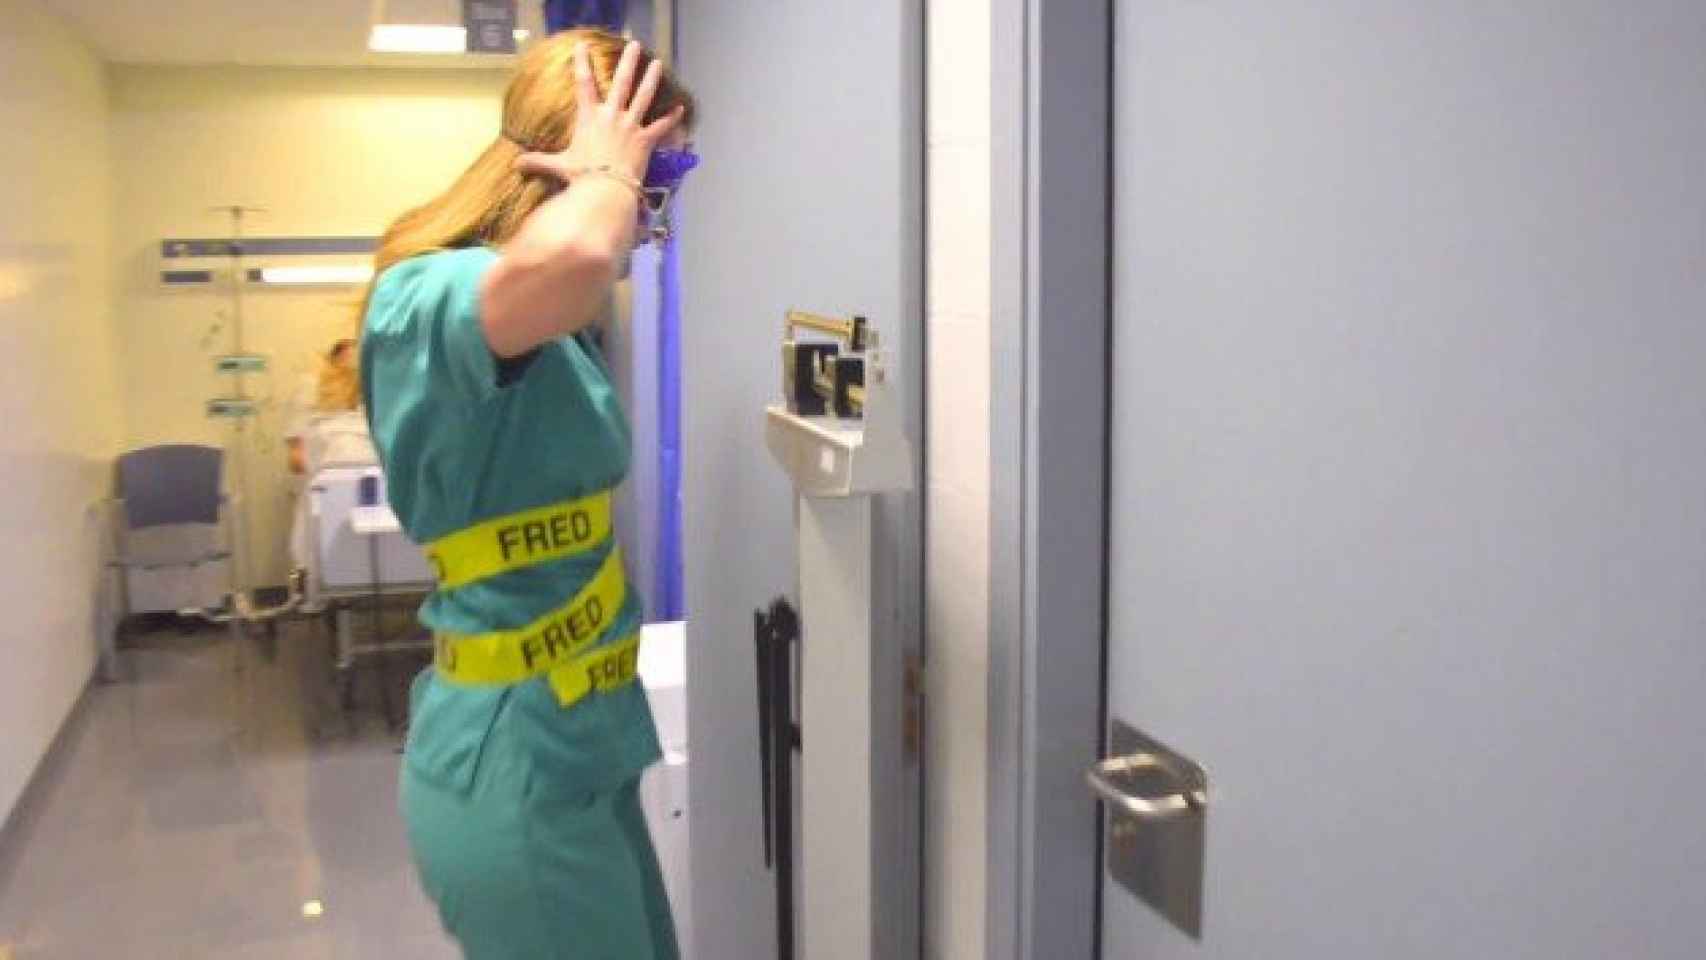 Una imagen del vídeo grabado por los médicos y enfermeras / CG